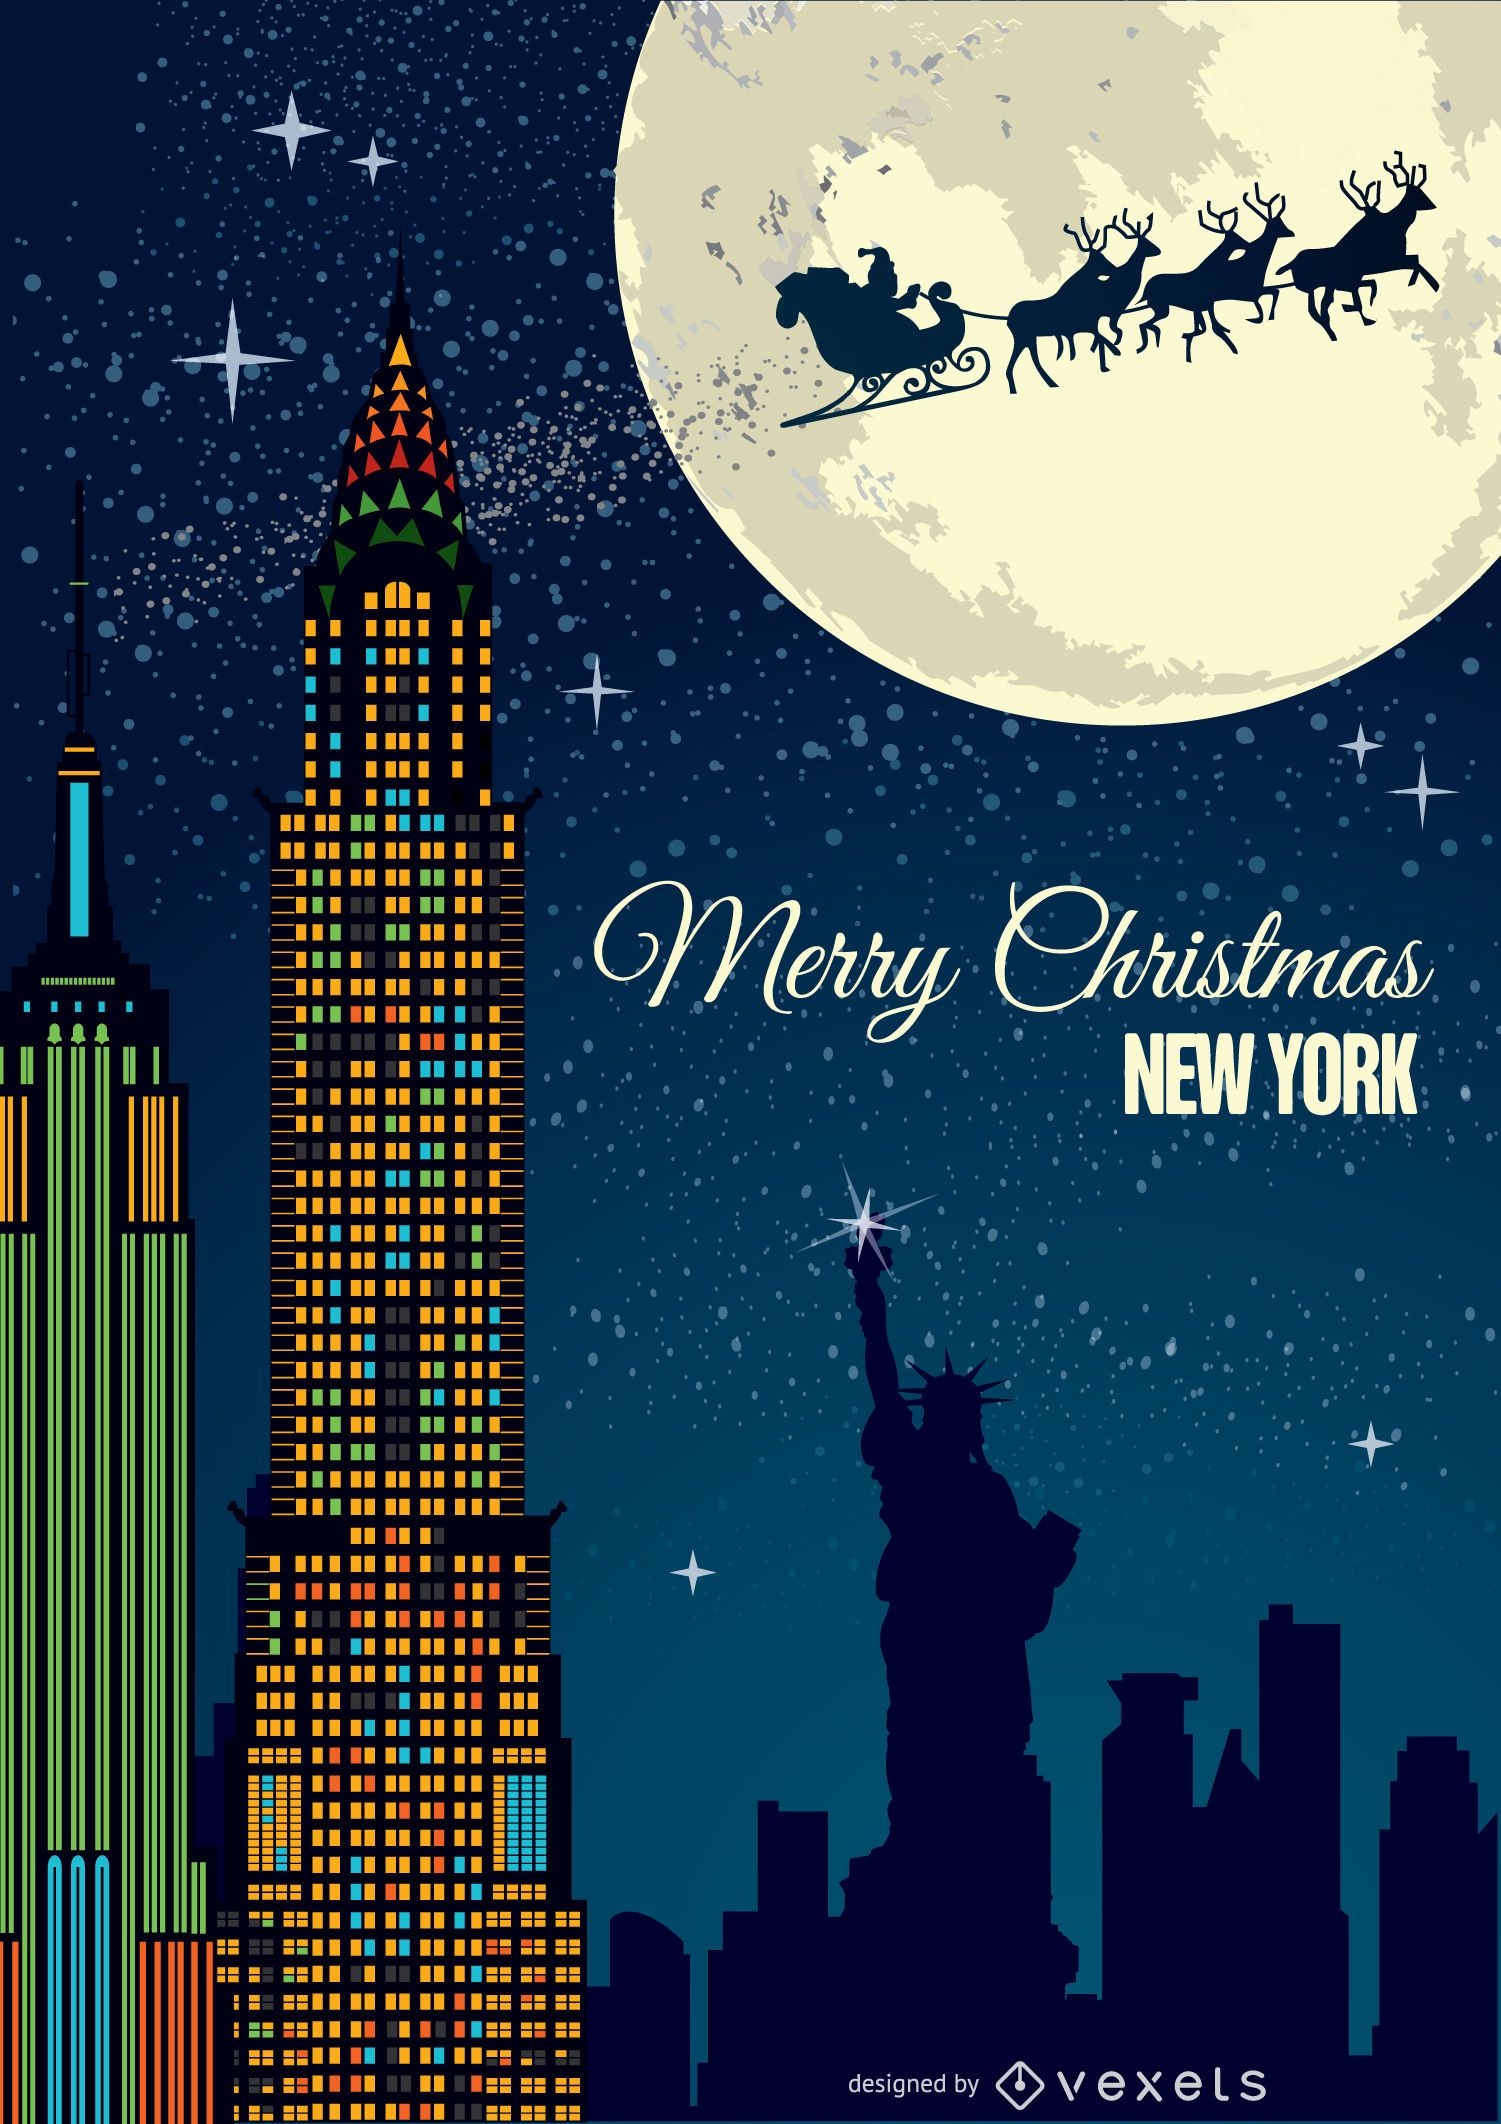 Cart?o postal de Natal em Nova York